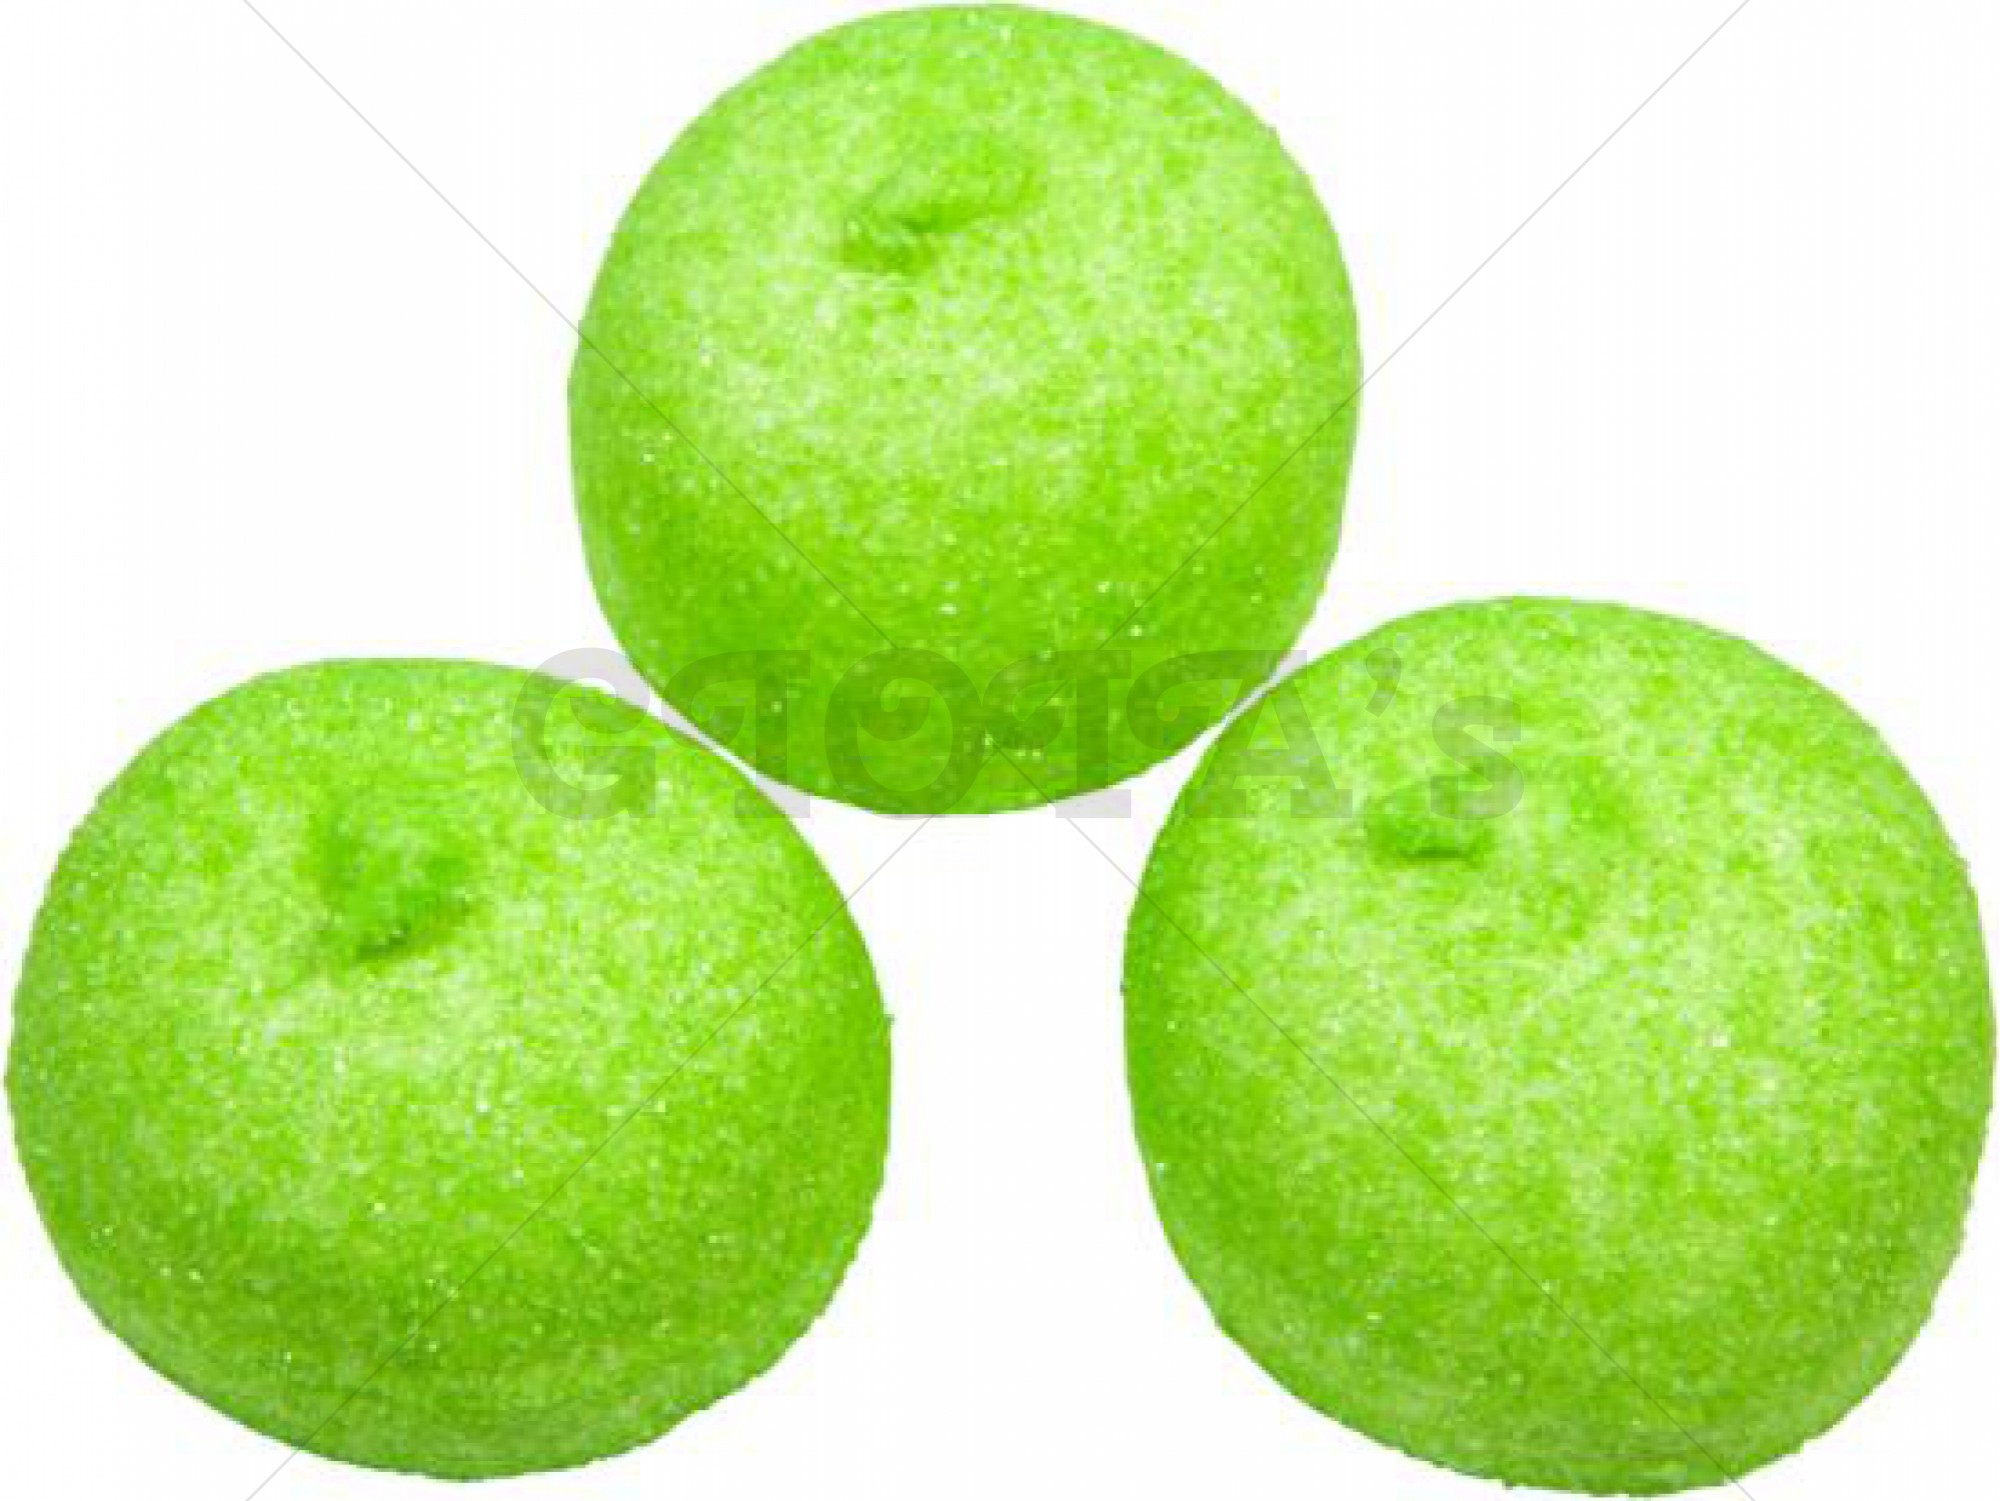 Spekbollen groen - 5 stuks